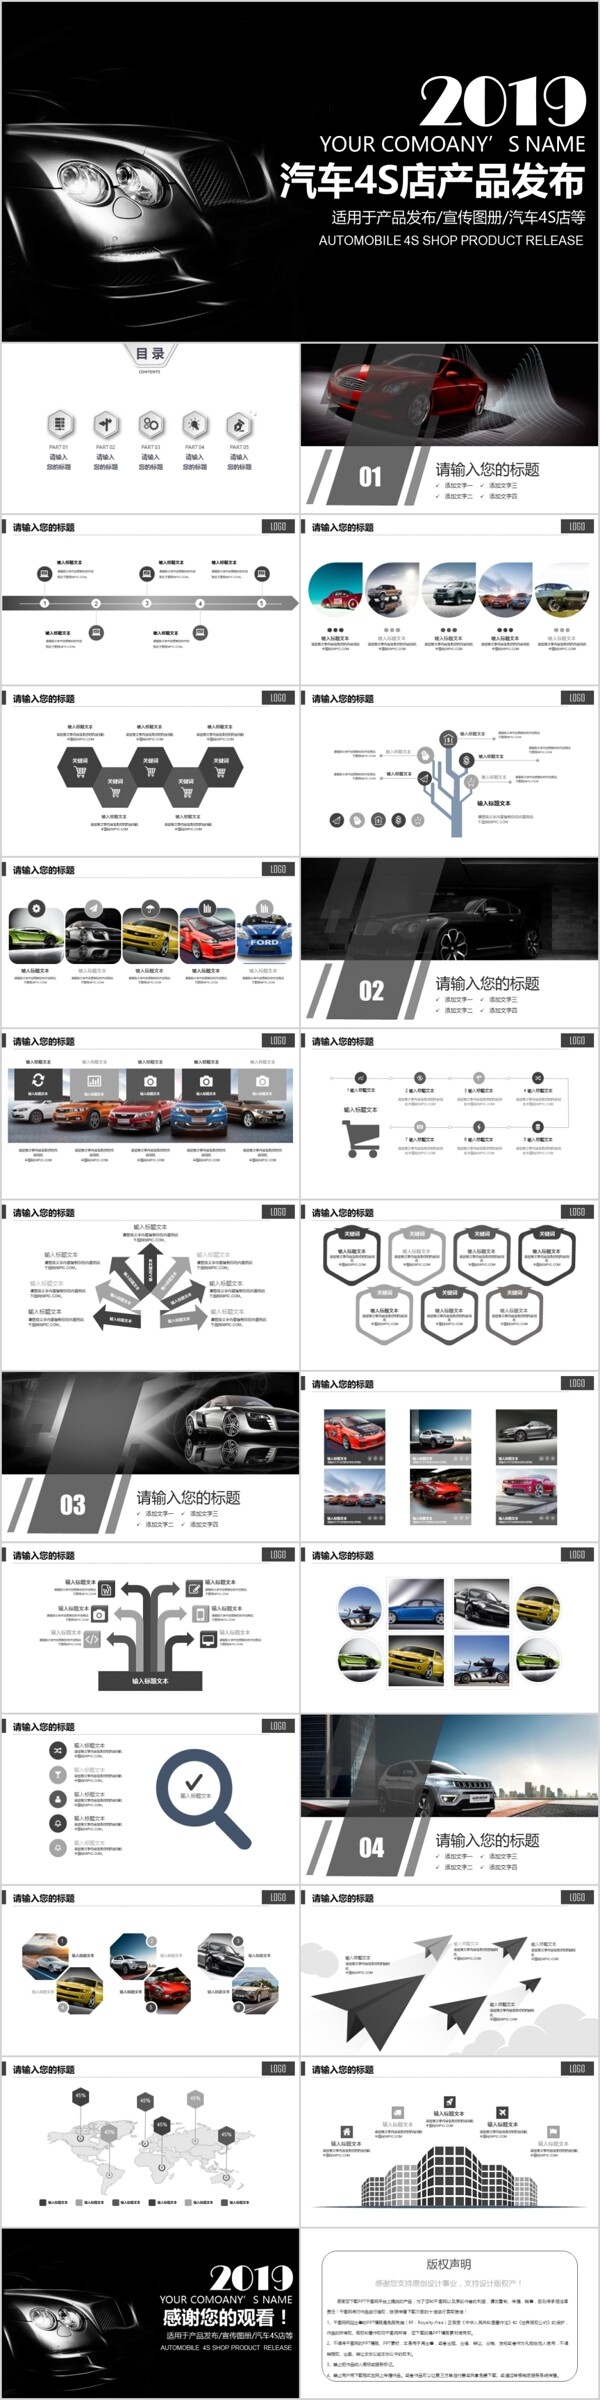 汽车品牌宣传4S店宣传策划方案PPT模板